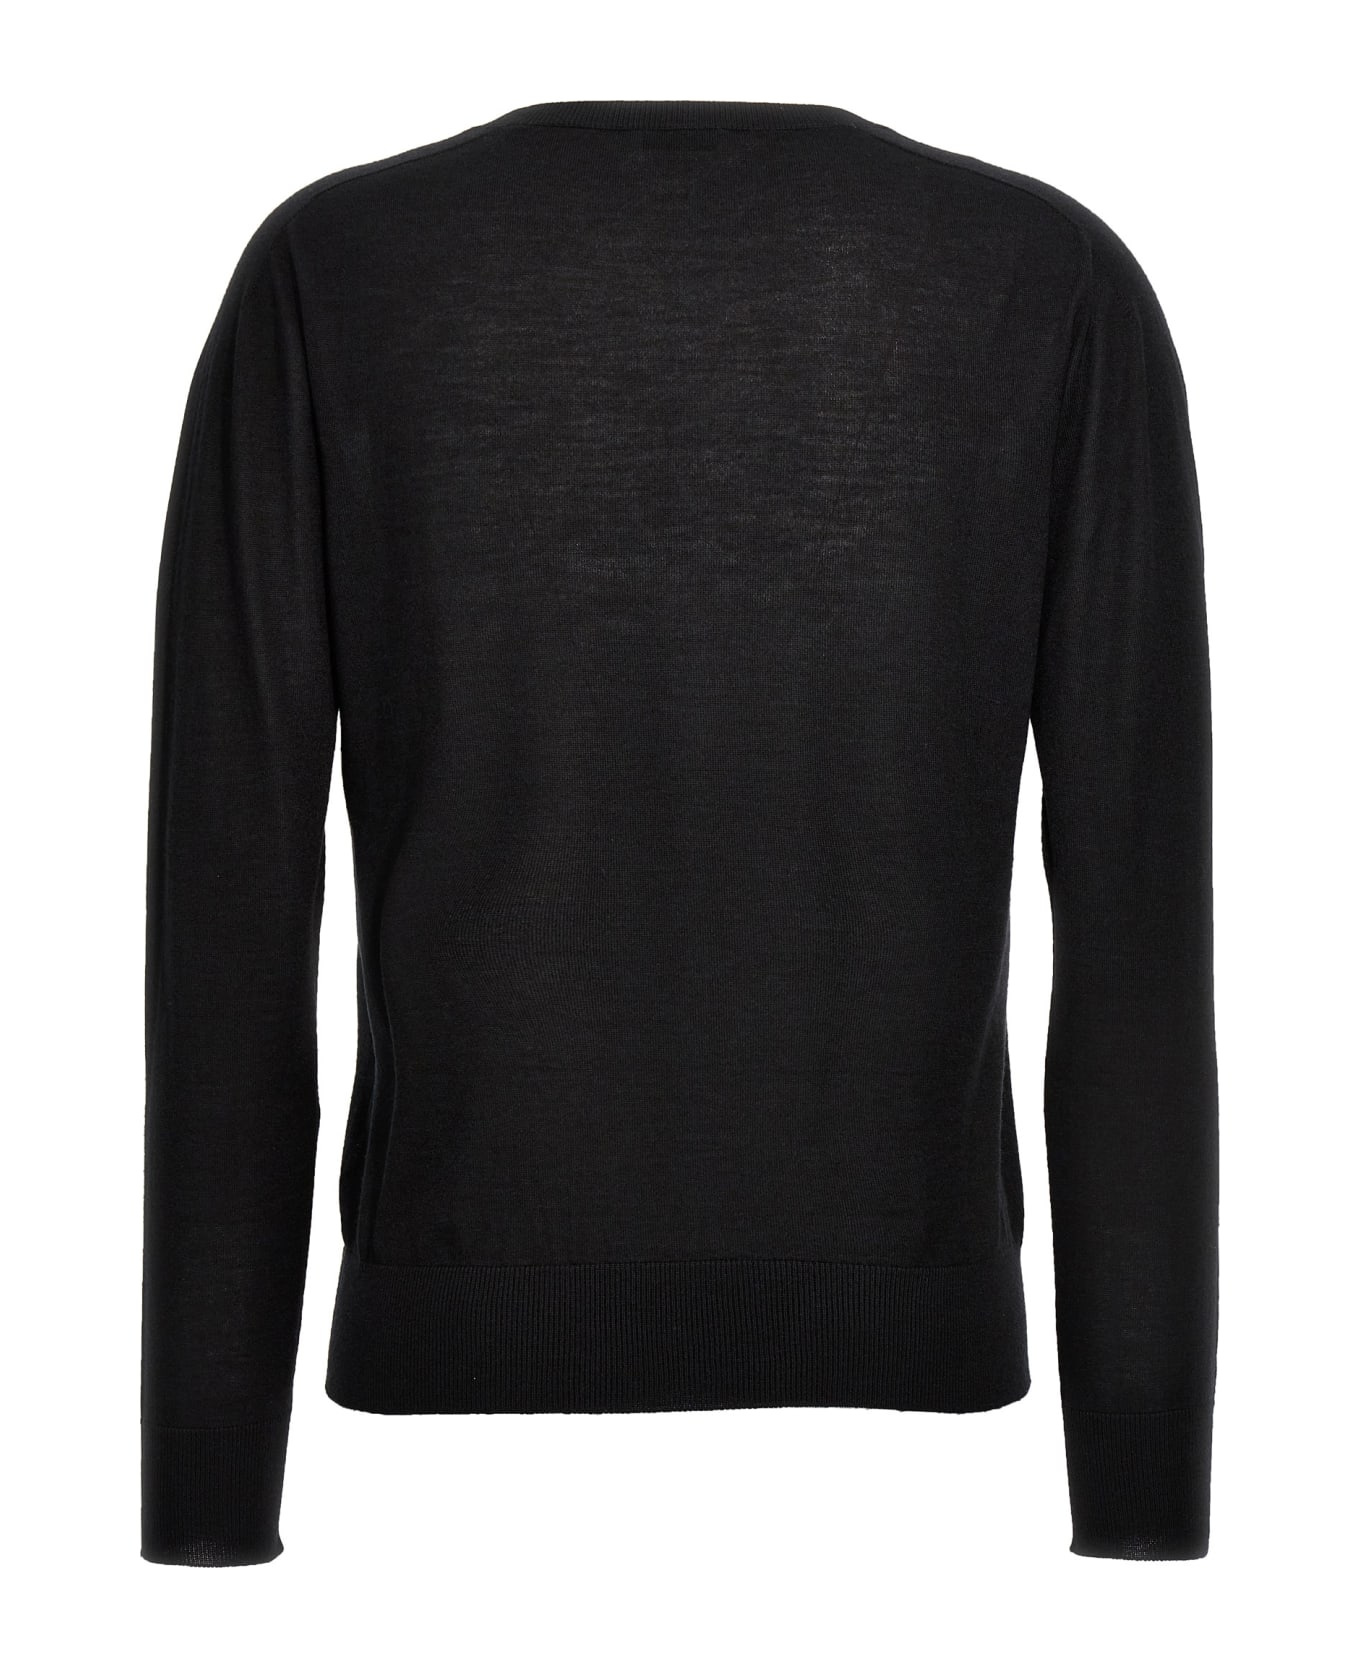 Kiton V-neck Sweater - Black  